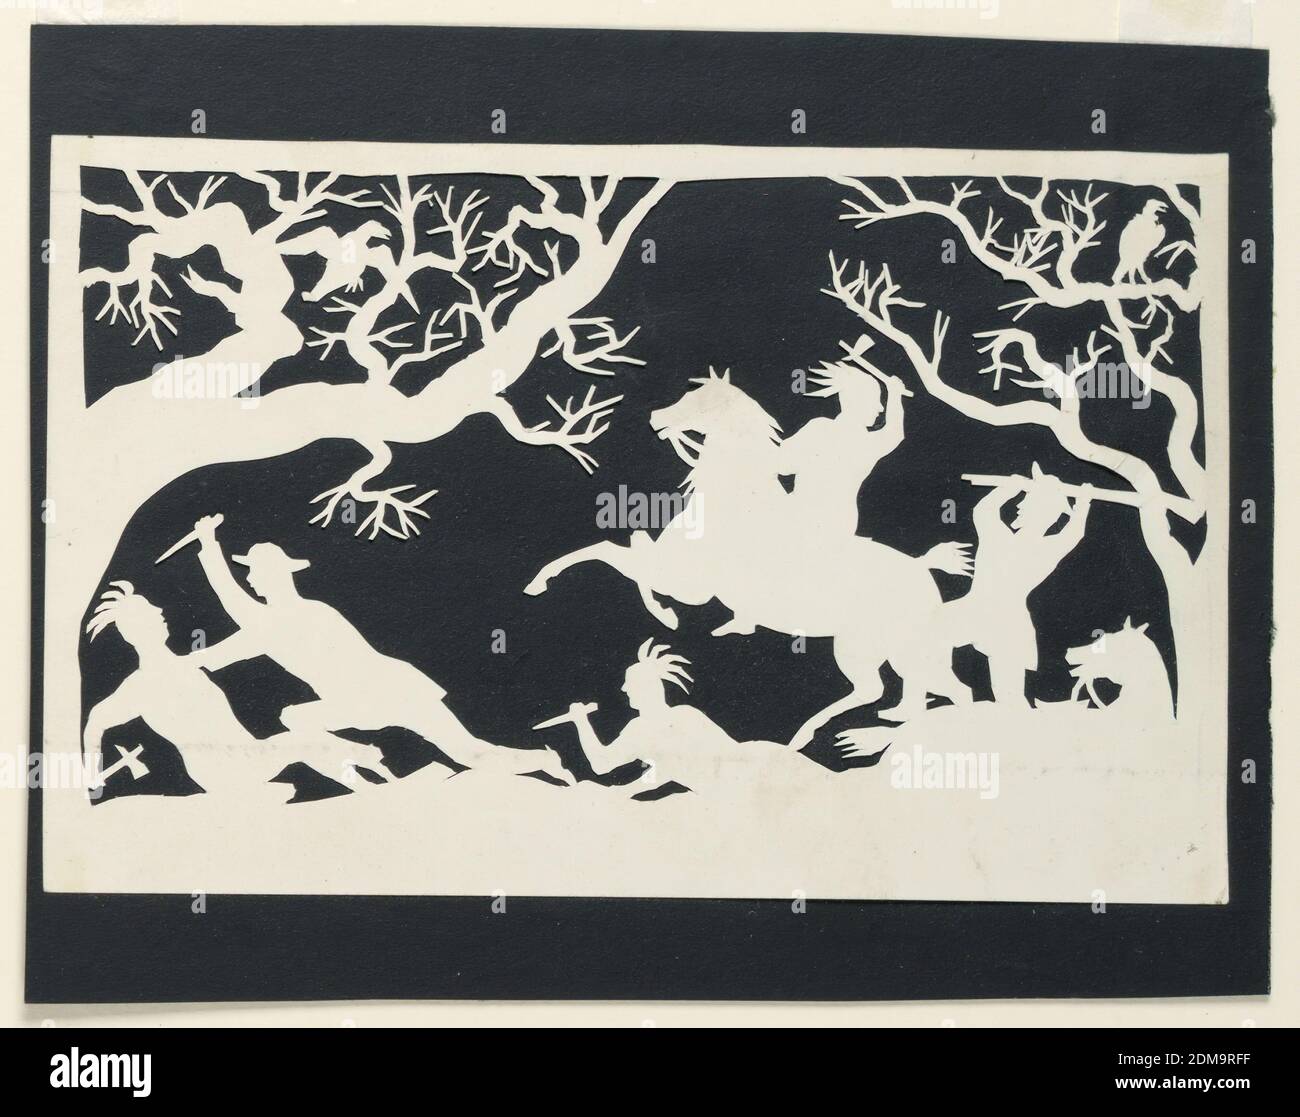 Hombres blancos masacrando a los indios, Silhouette de papel blanco, cortado, sobre el soporte de papel negro, hombres blancos masacrando a los indios., Inglaterra, 1850–1875, Silhouette, Silhouette Foto de stock